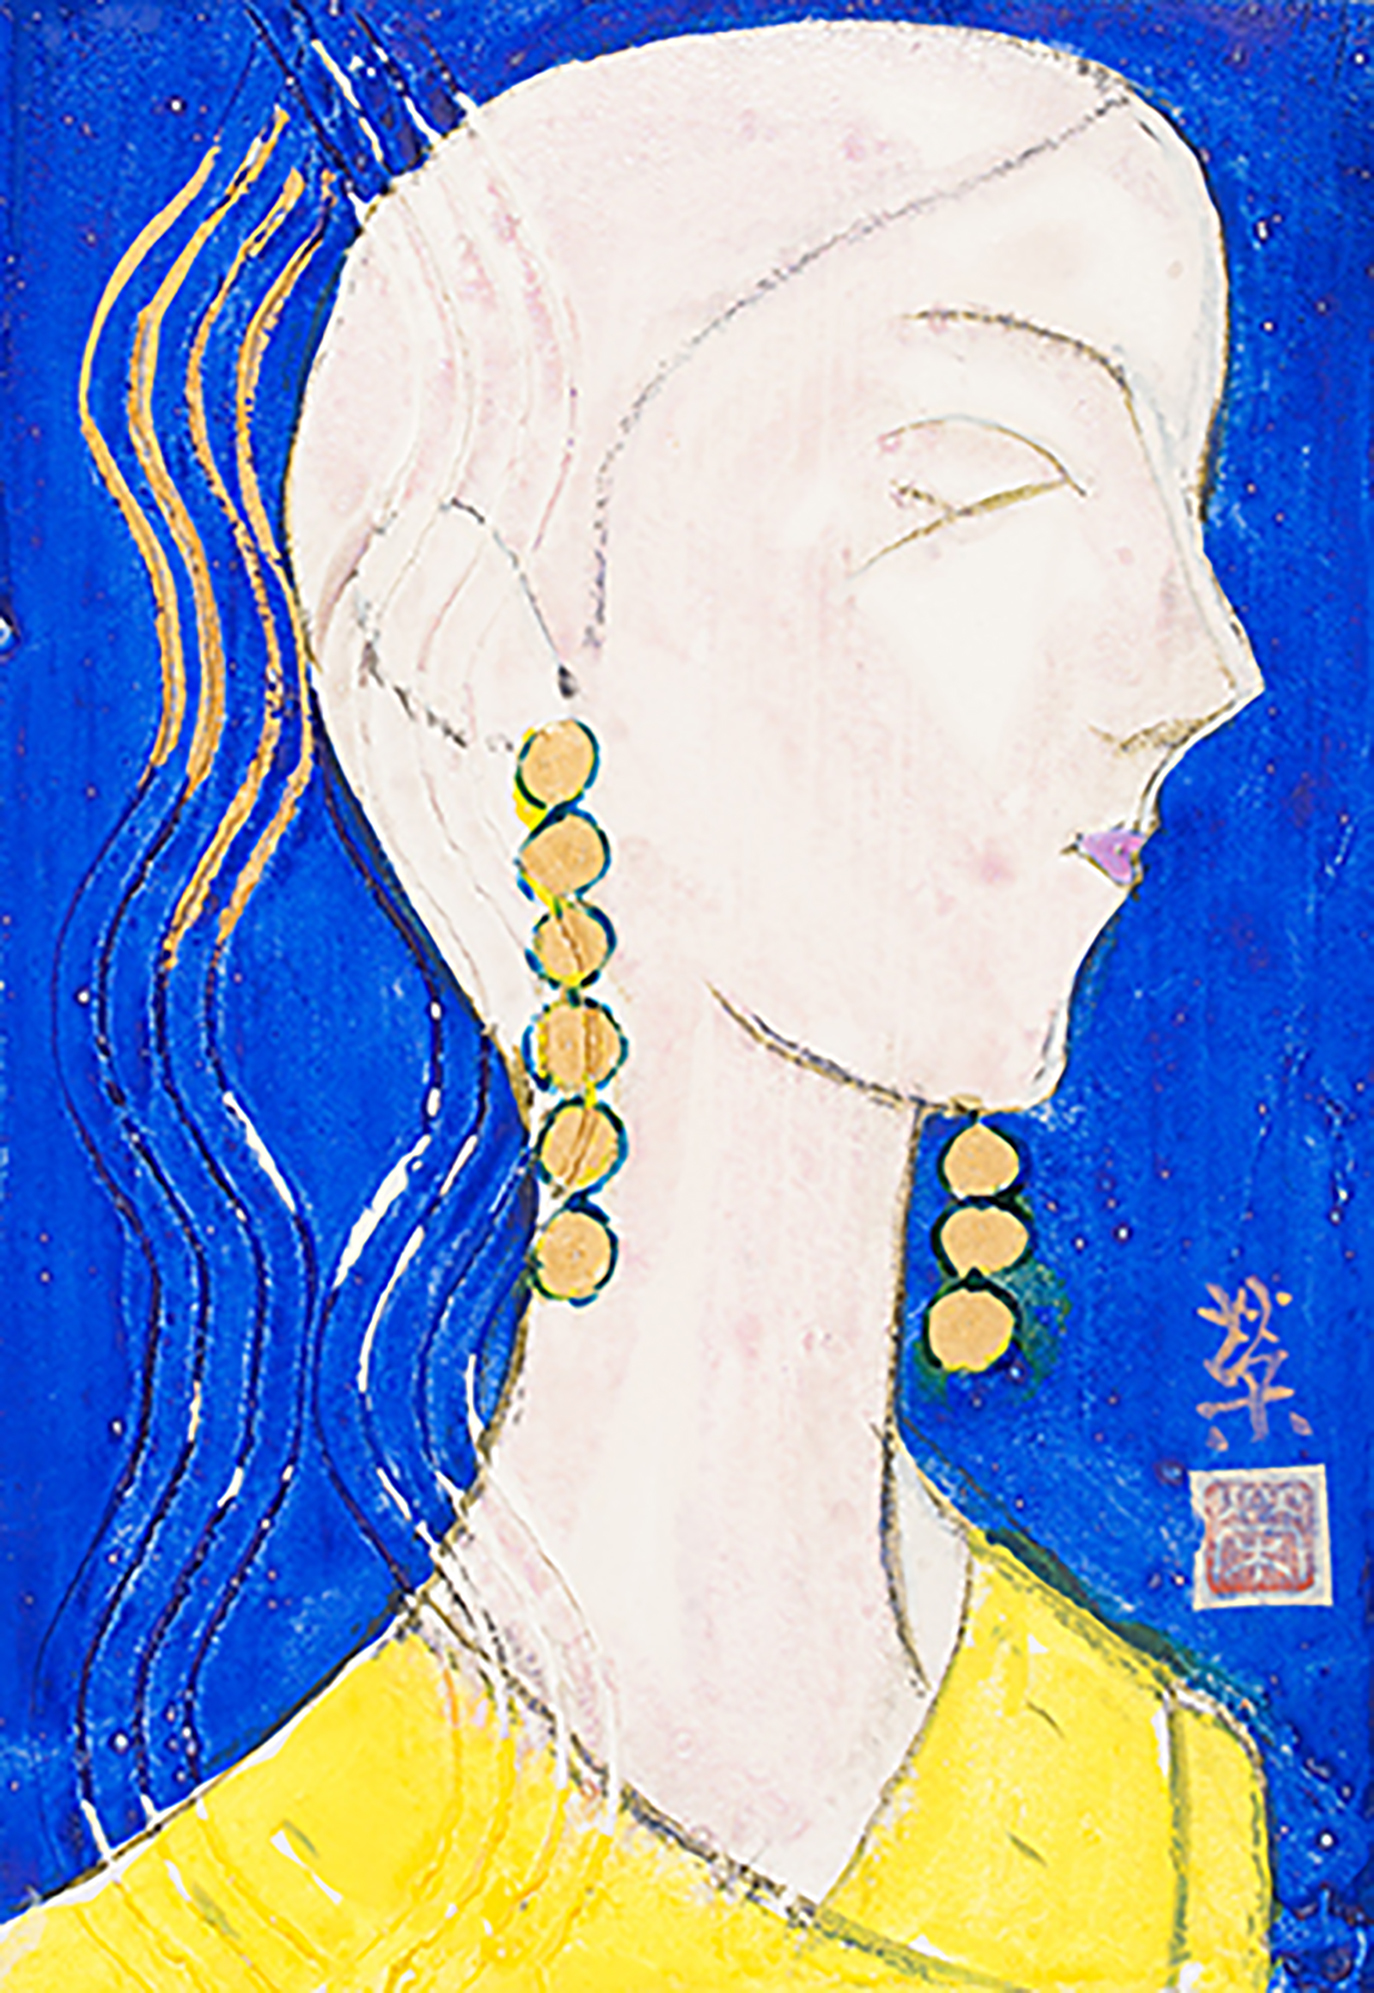 manequin#03 バック青、丸耳飾り、縦波あり